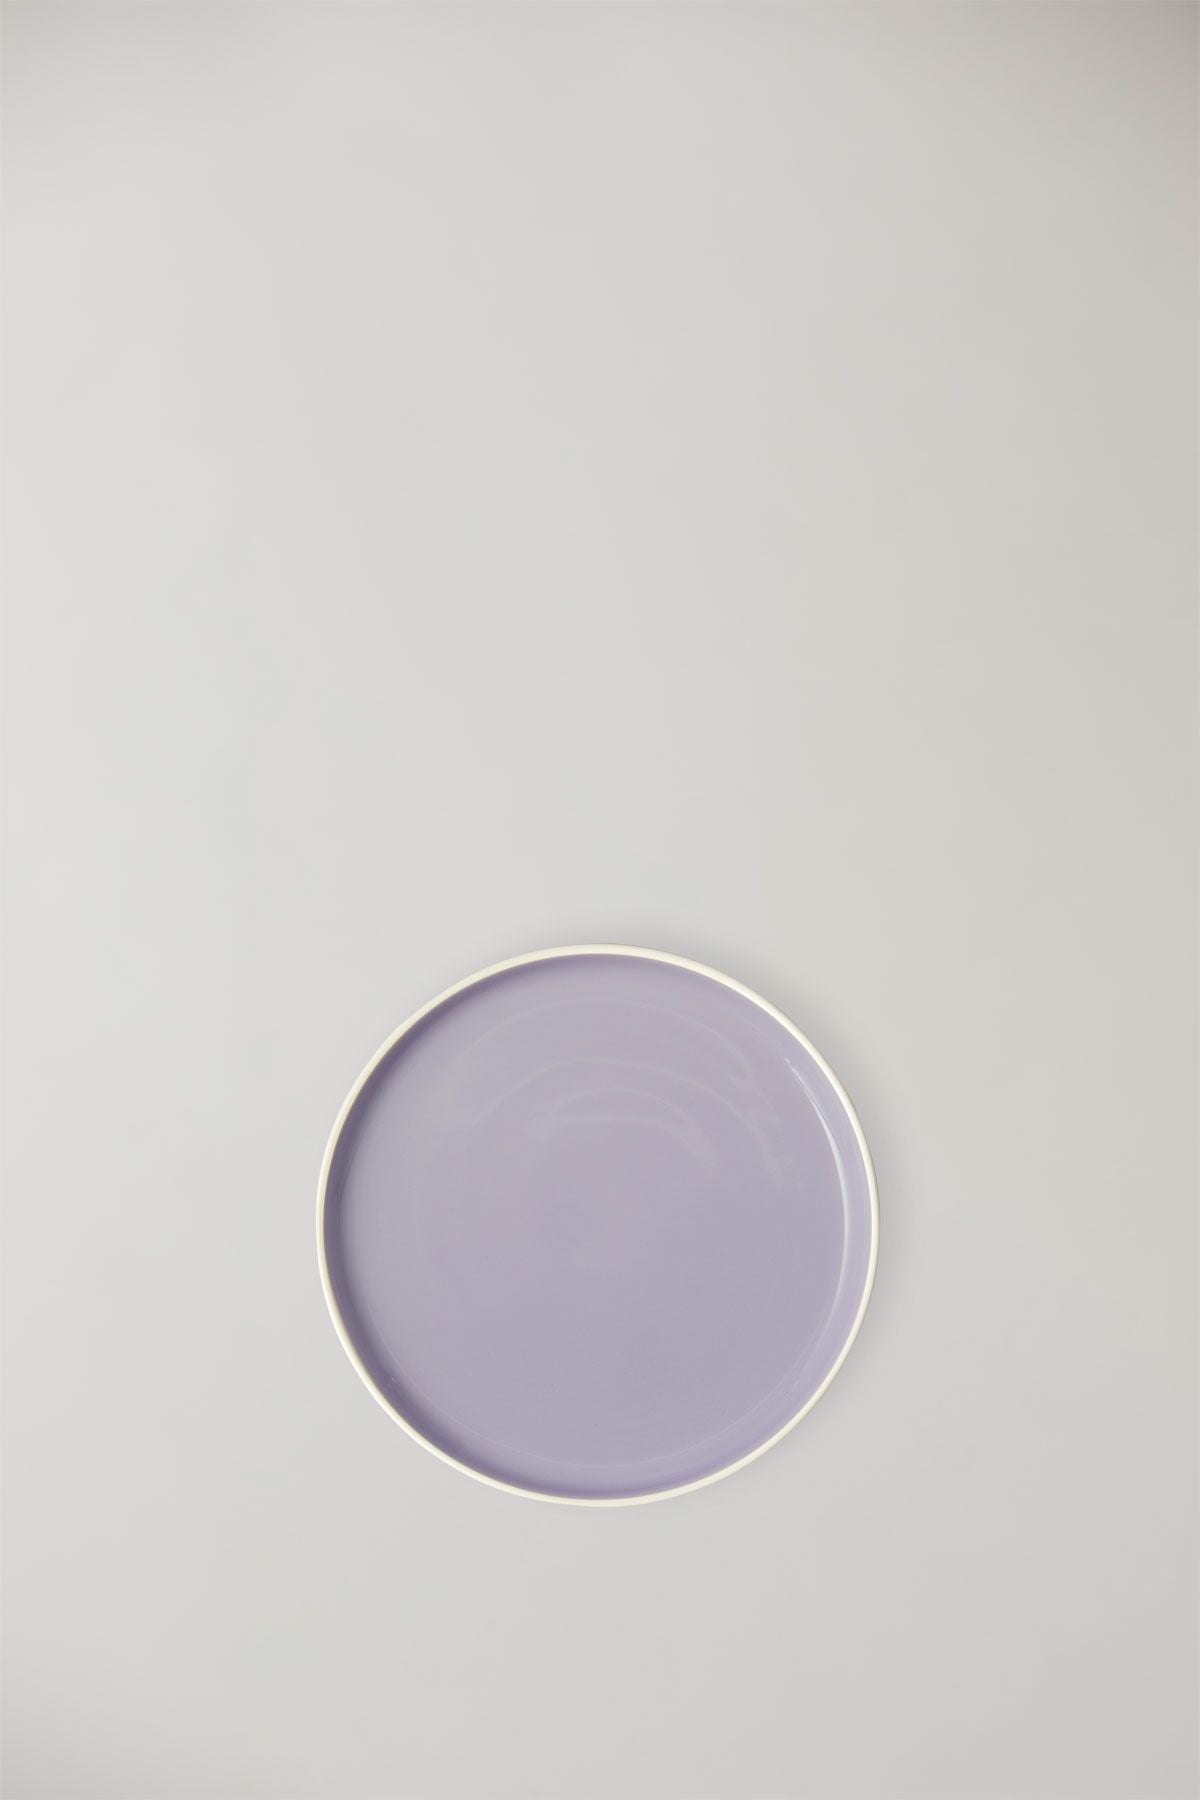 Estudio sobre plato de servicio de arcilla, marfil/luz púrpura